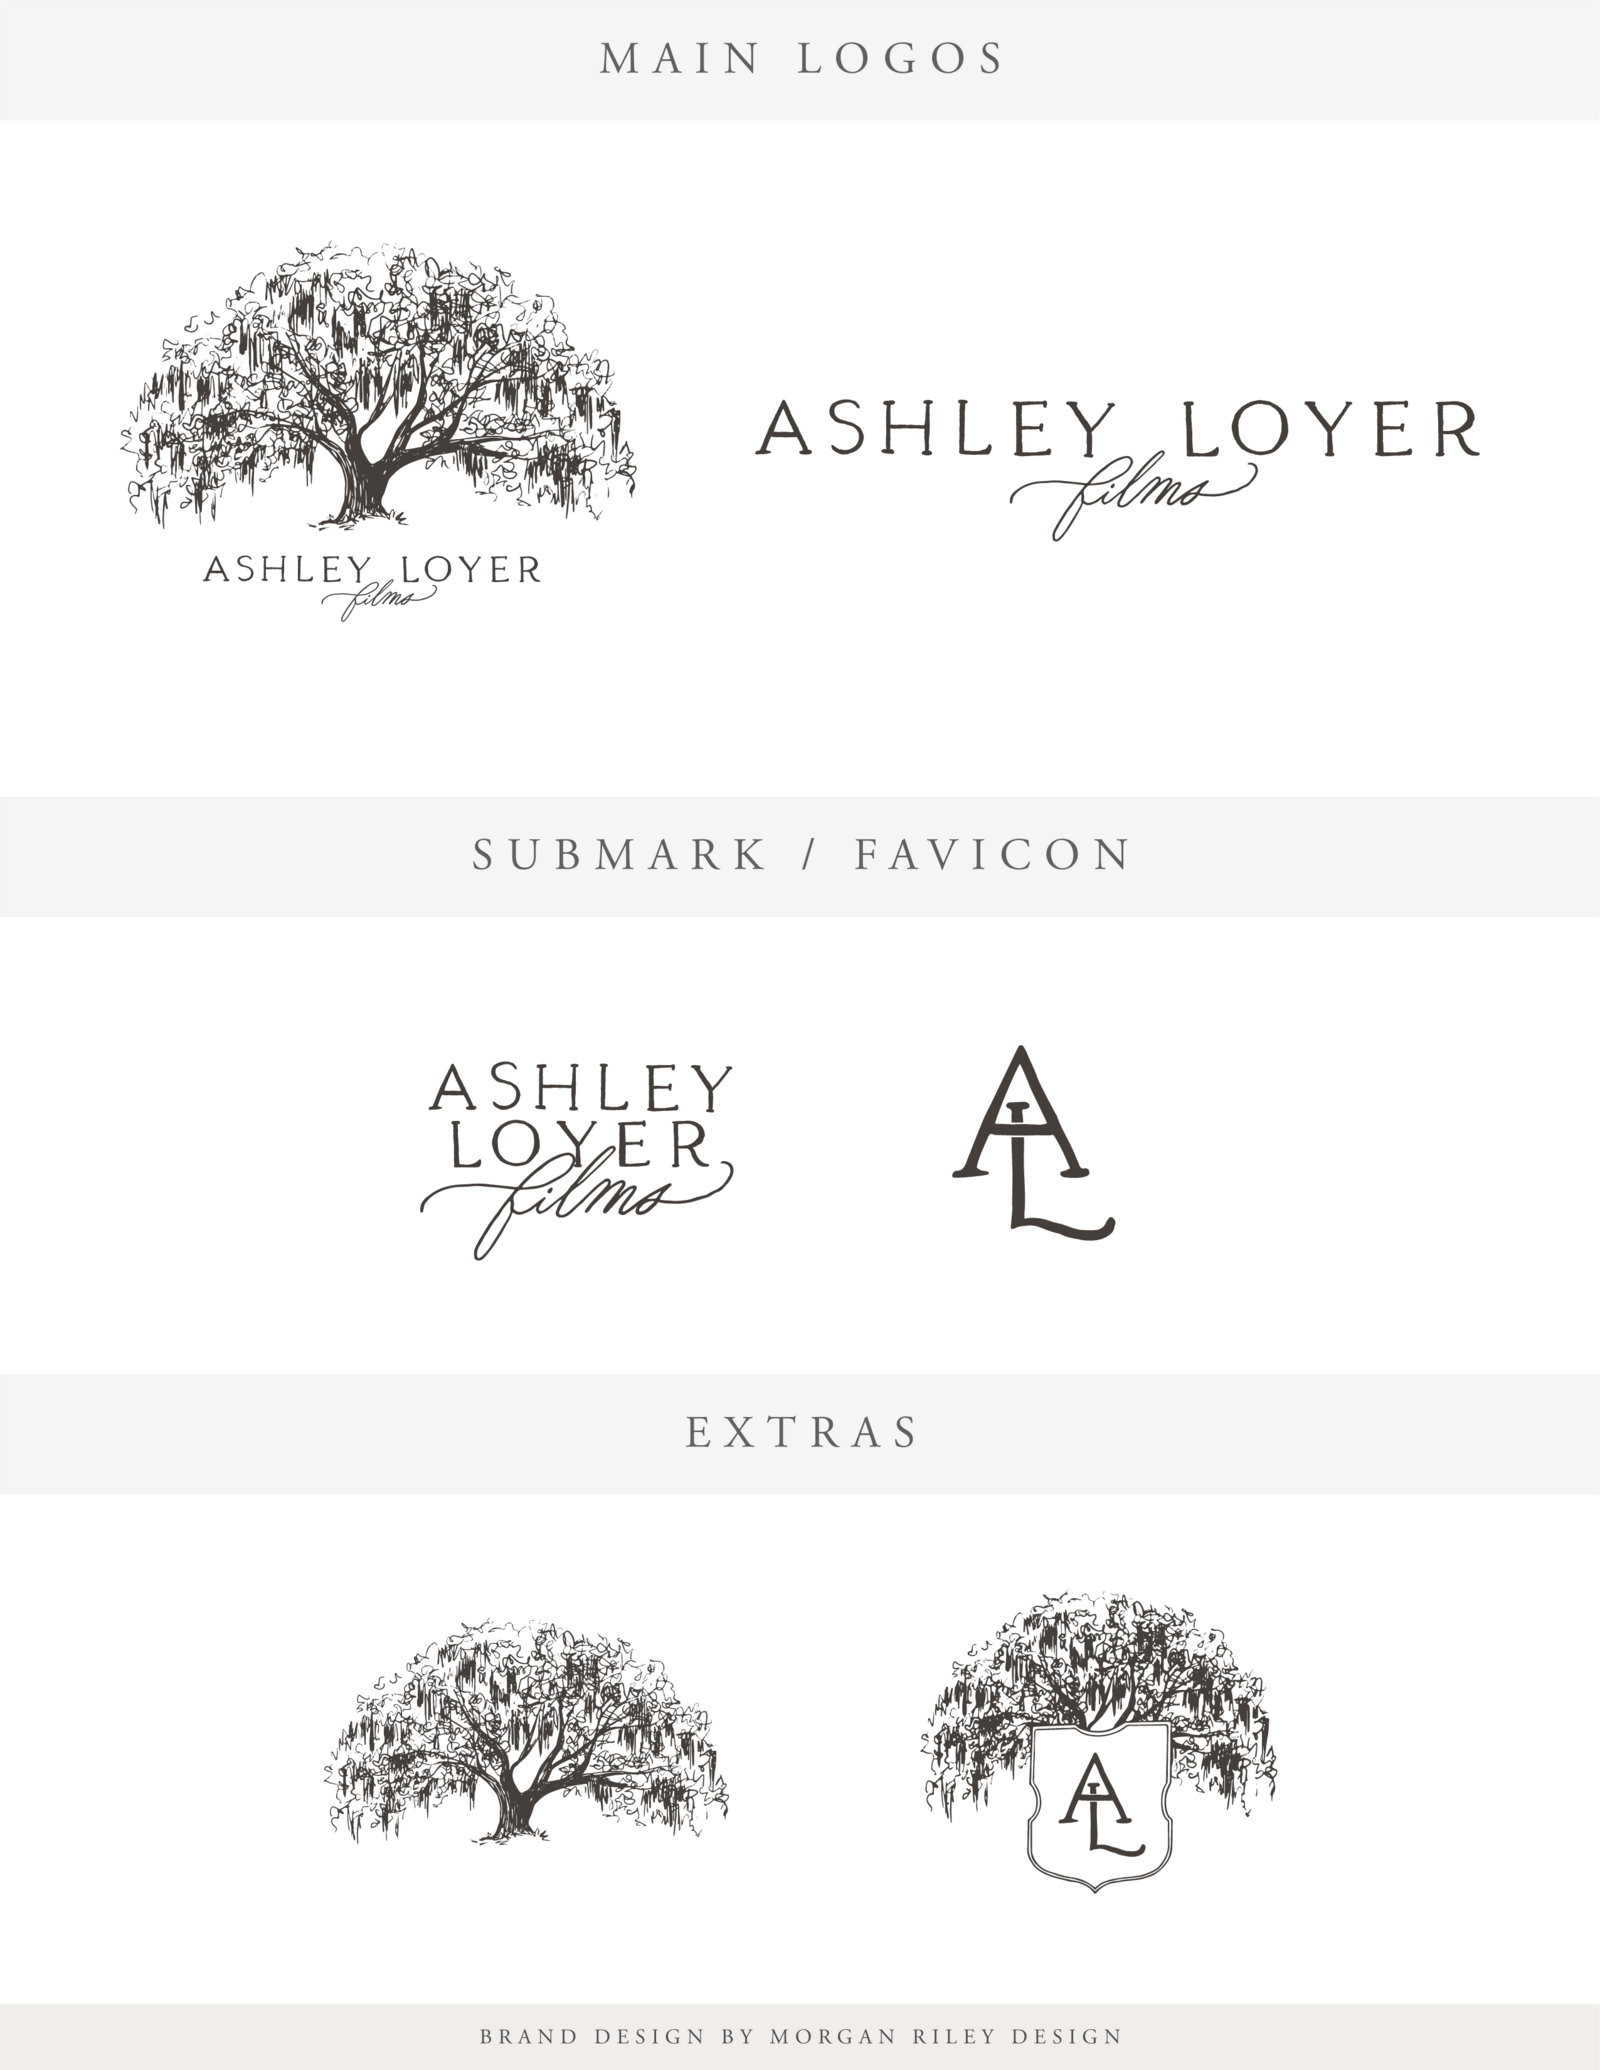 Ashley Loyer Design Board-02